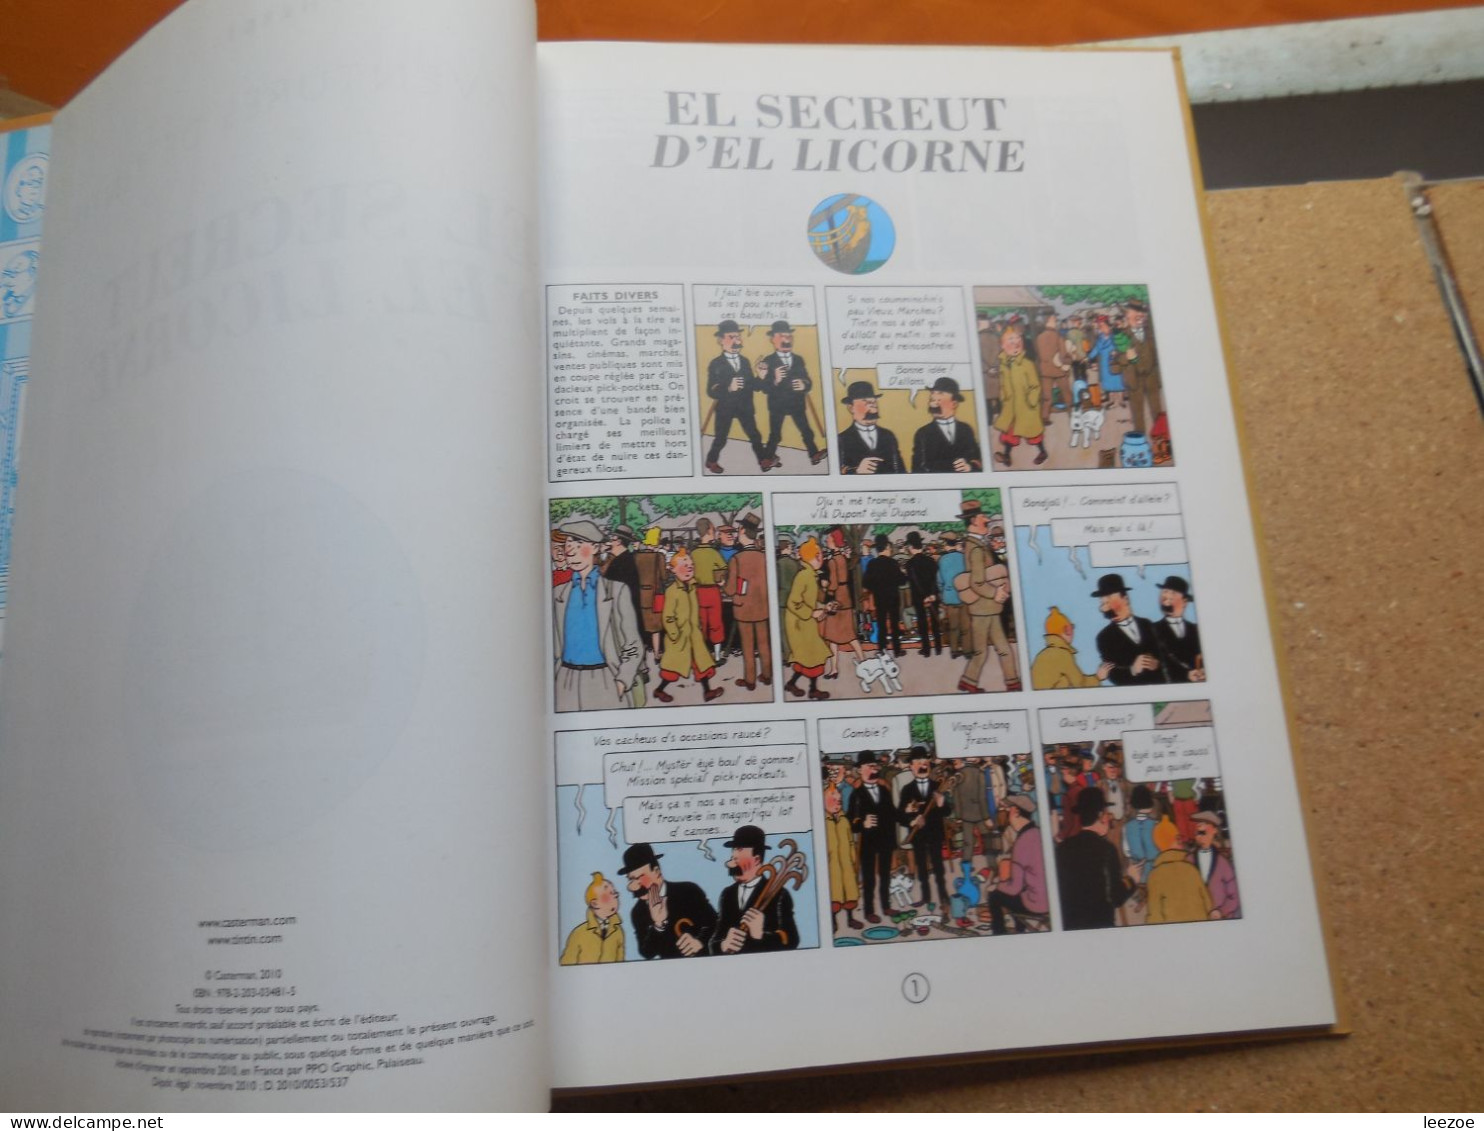 BD Tintin (en langues régionales) Borain. El Secreut d'el Licorne, édition numérotée 1575............N5